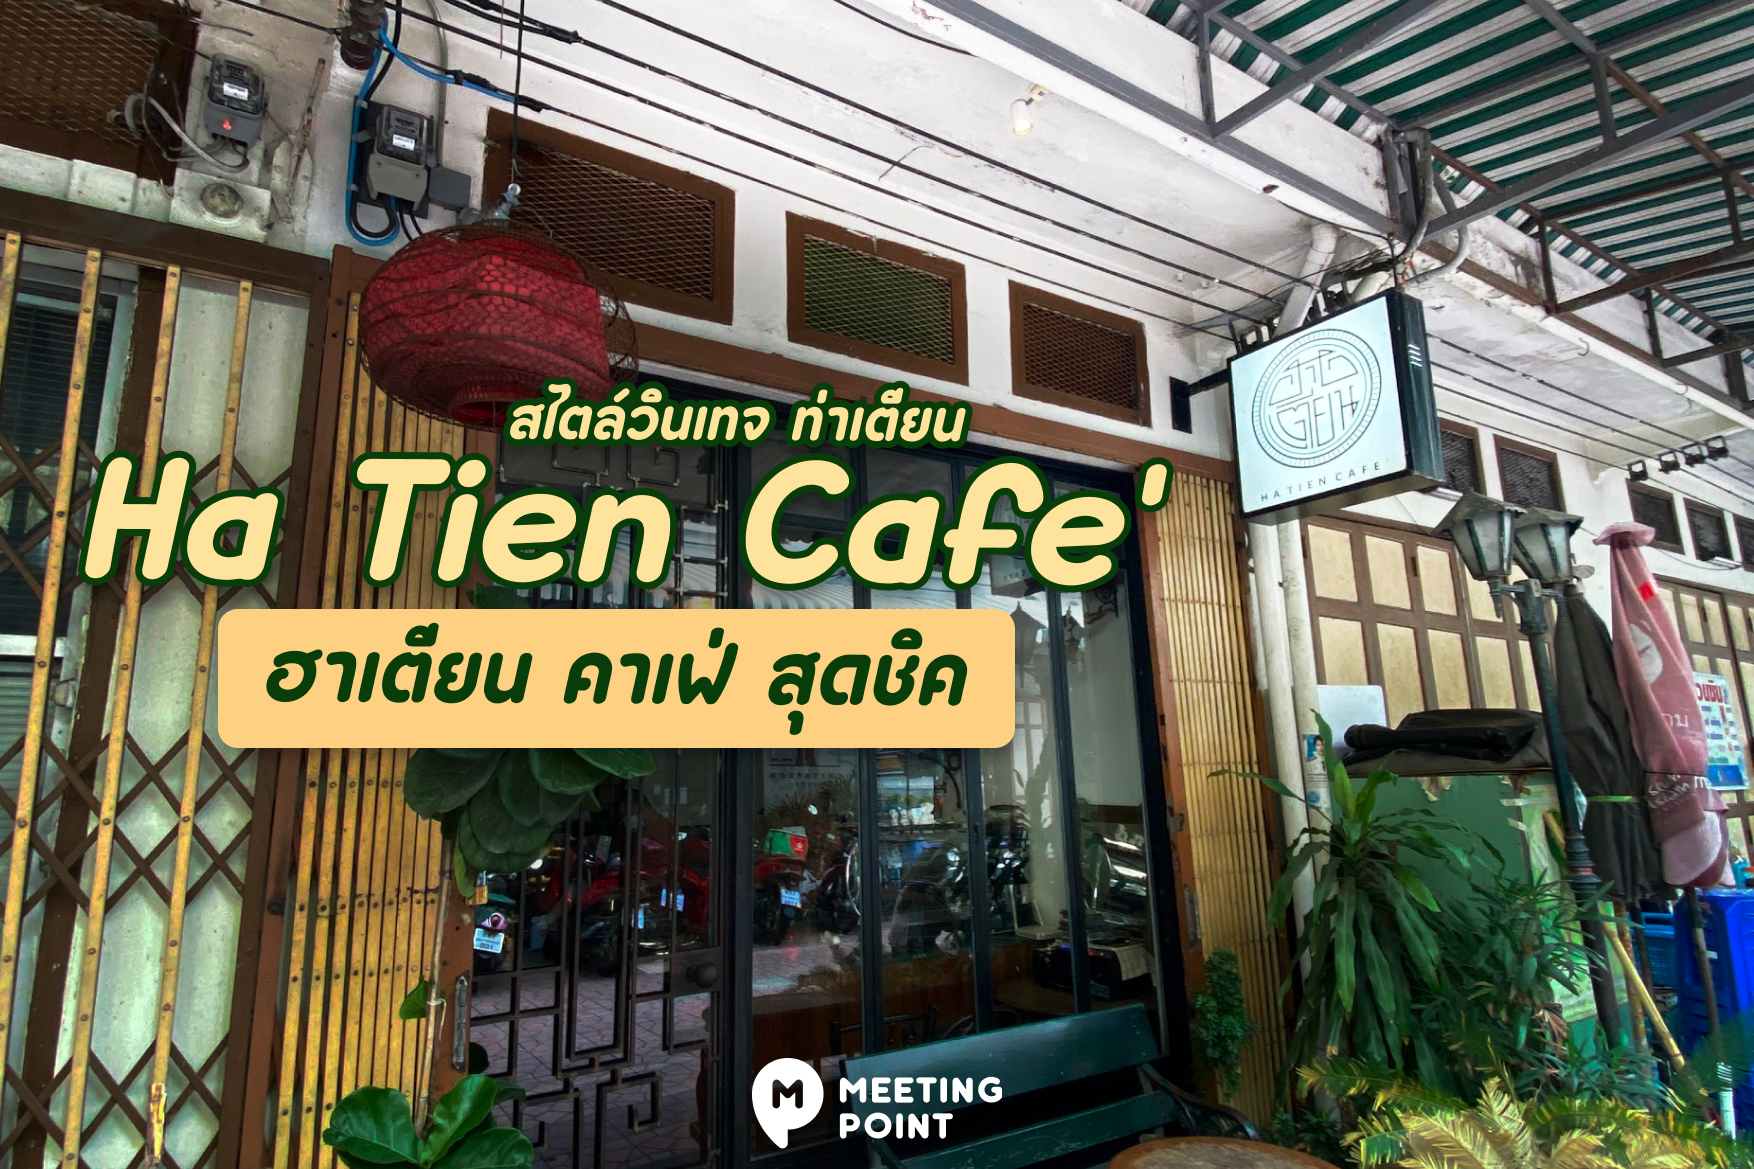 Ha Tien Cafe' ฮาเตียน คาเฟ่ สุดชิค สไตล์วินเทจ ท่าเตียน